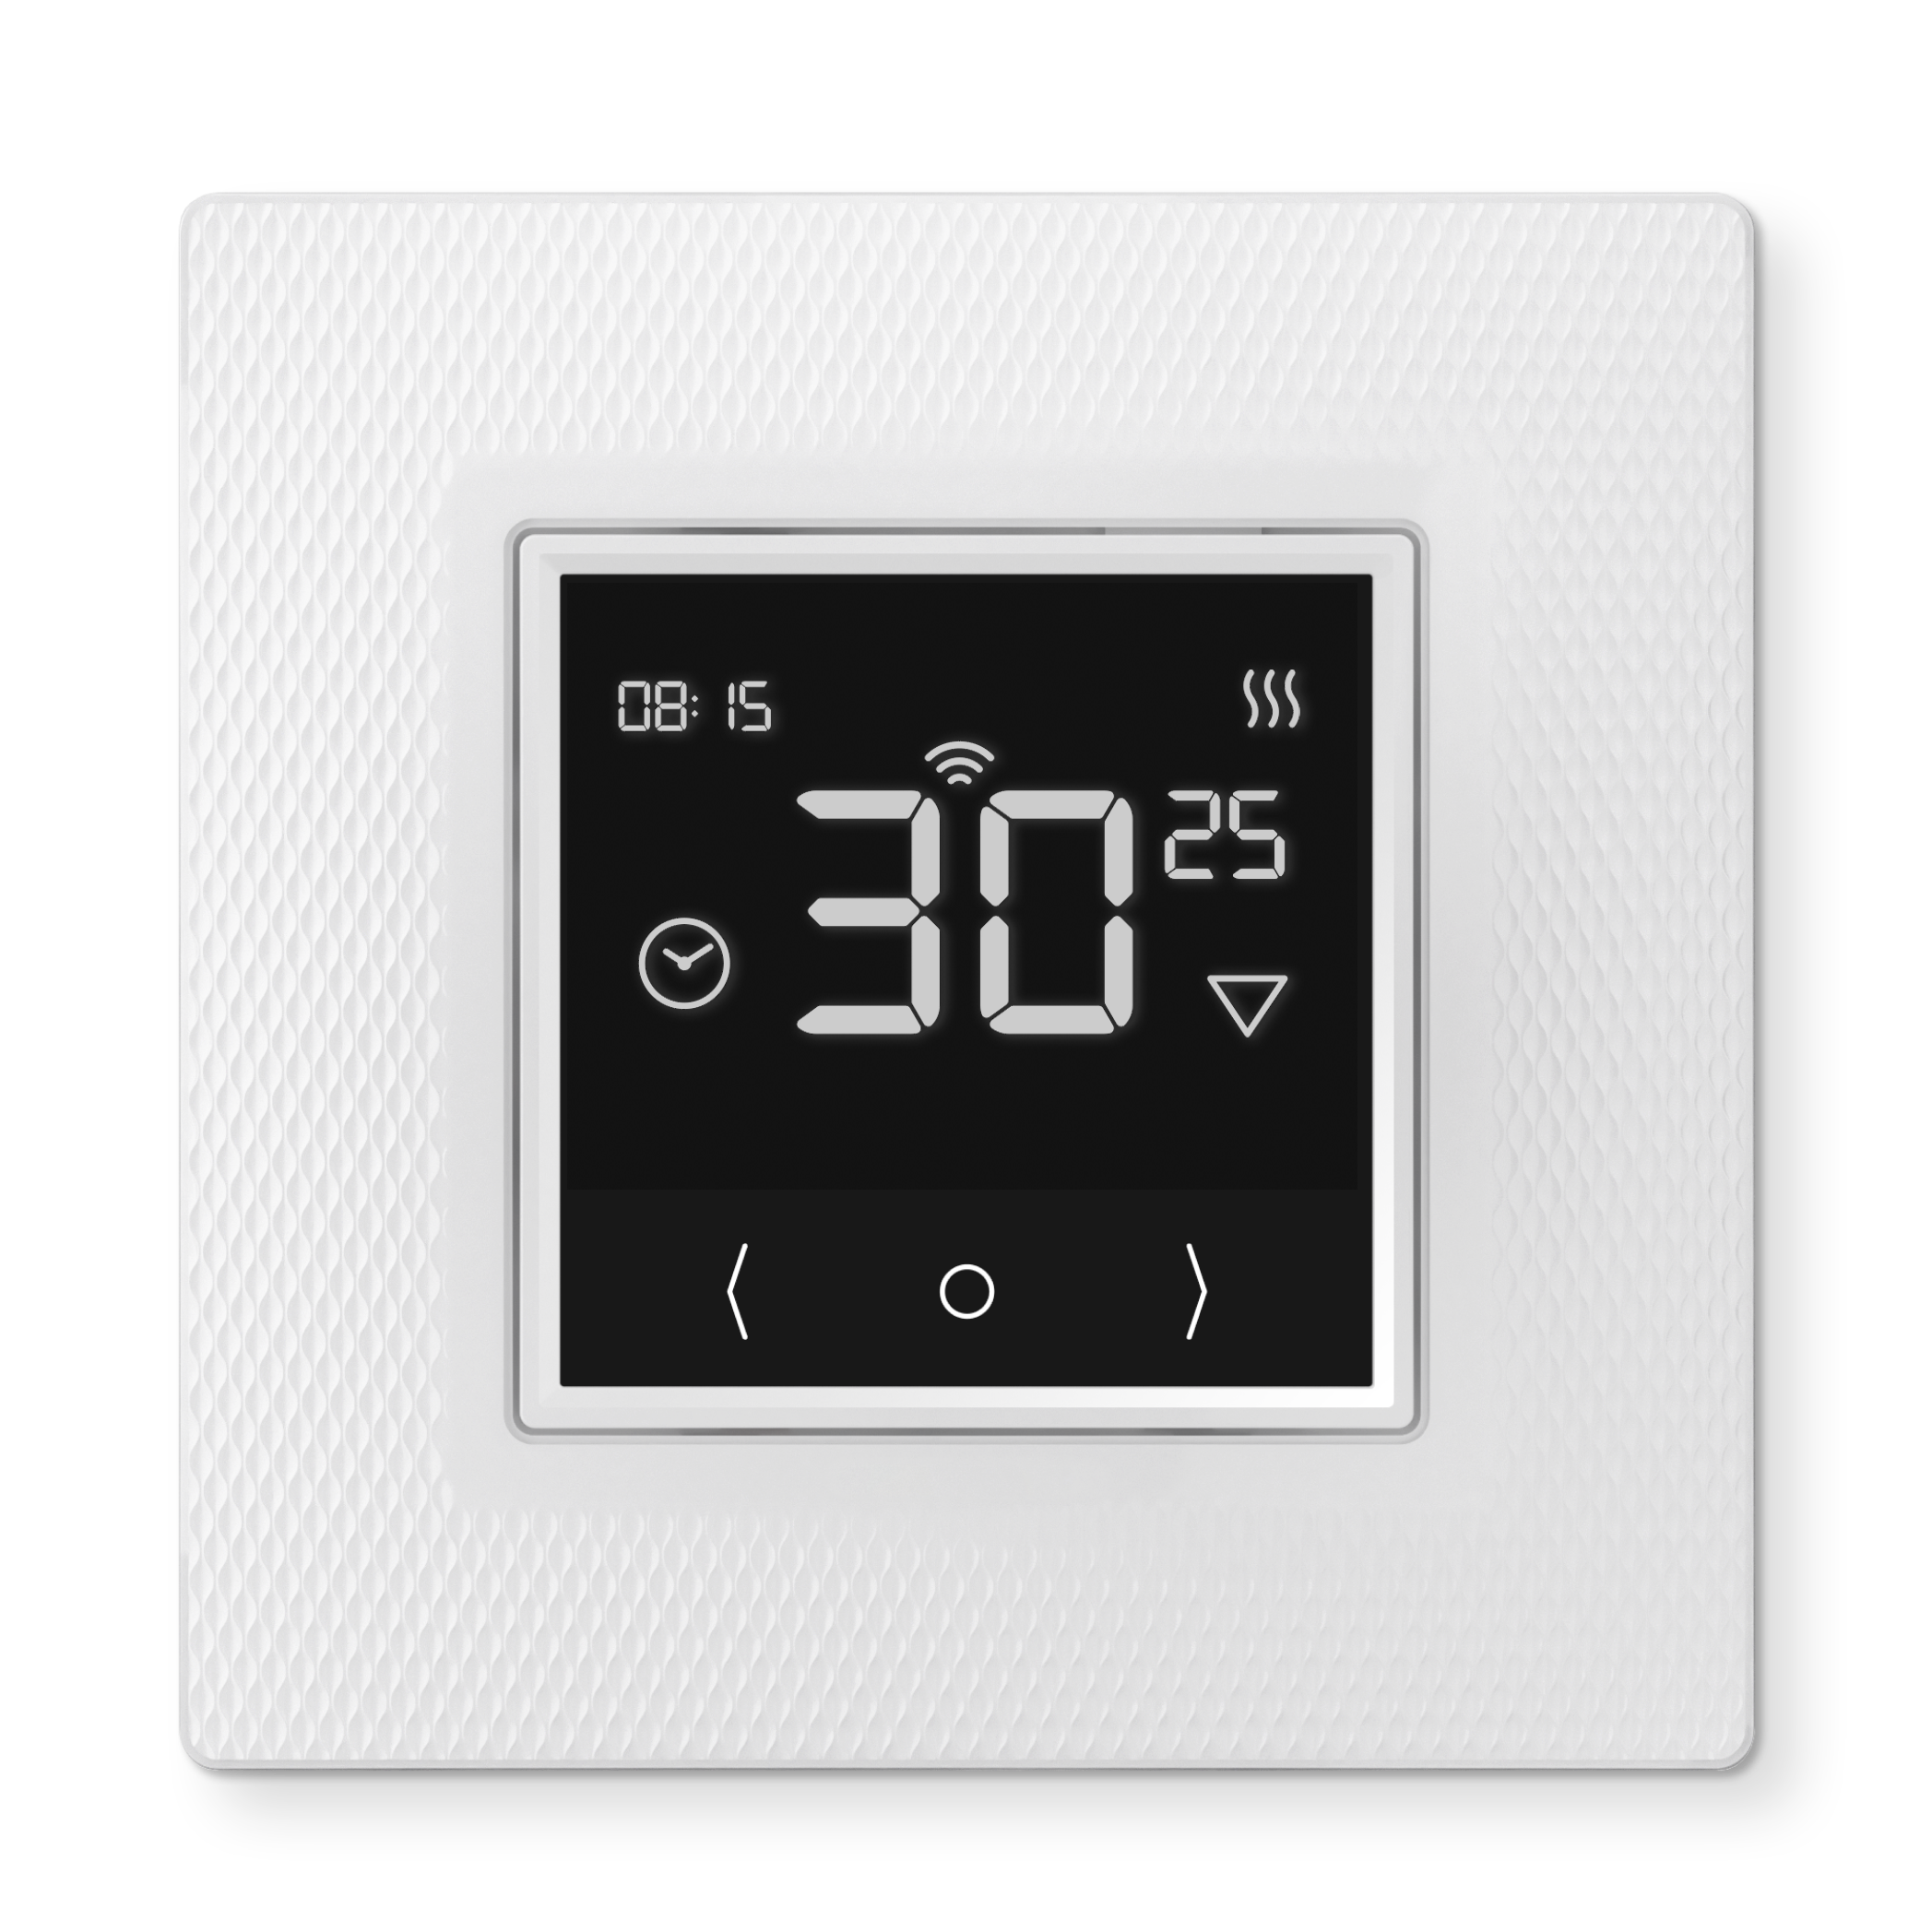 82880832 Терморегулятор для теплого пола Ecosmart 25 электронный программируемый цвет белый STLM-0037445 ТЕПЛОЛЮКС